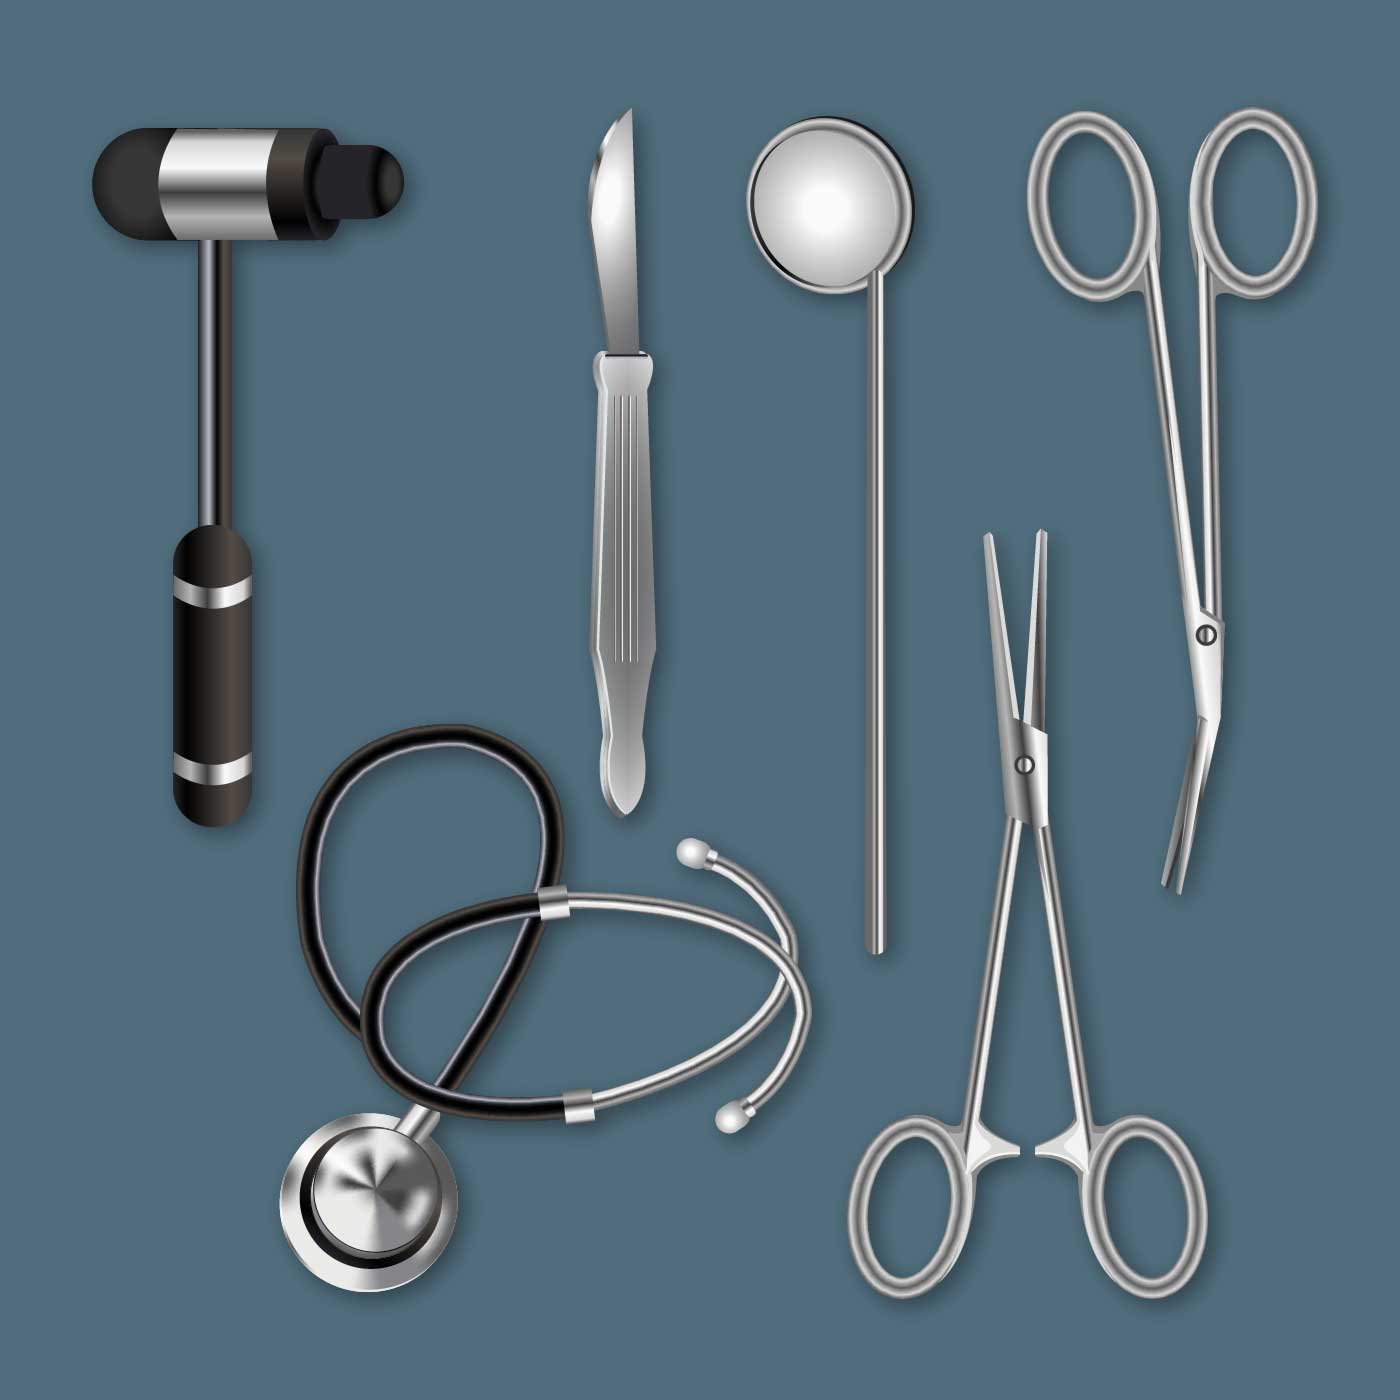 Hospital tools